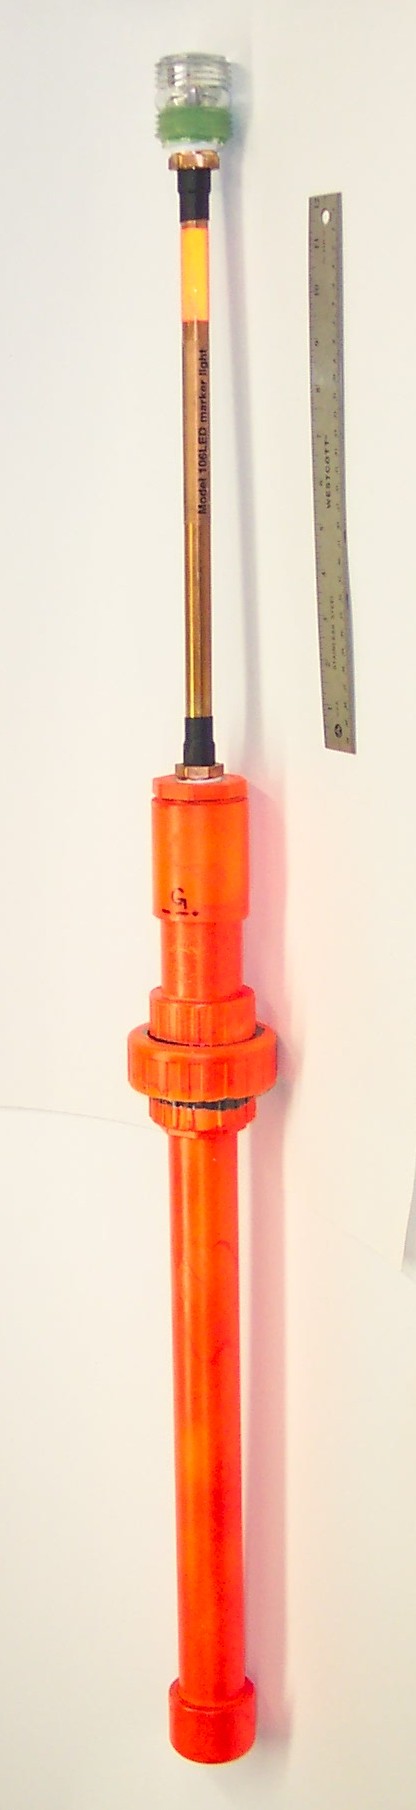 Model 106LED marker light